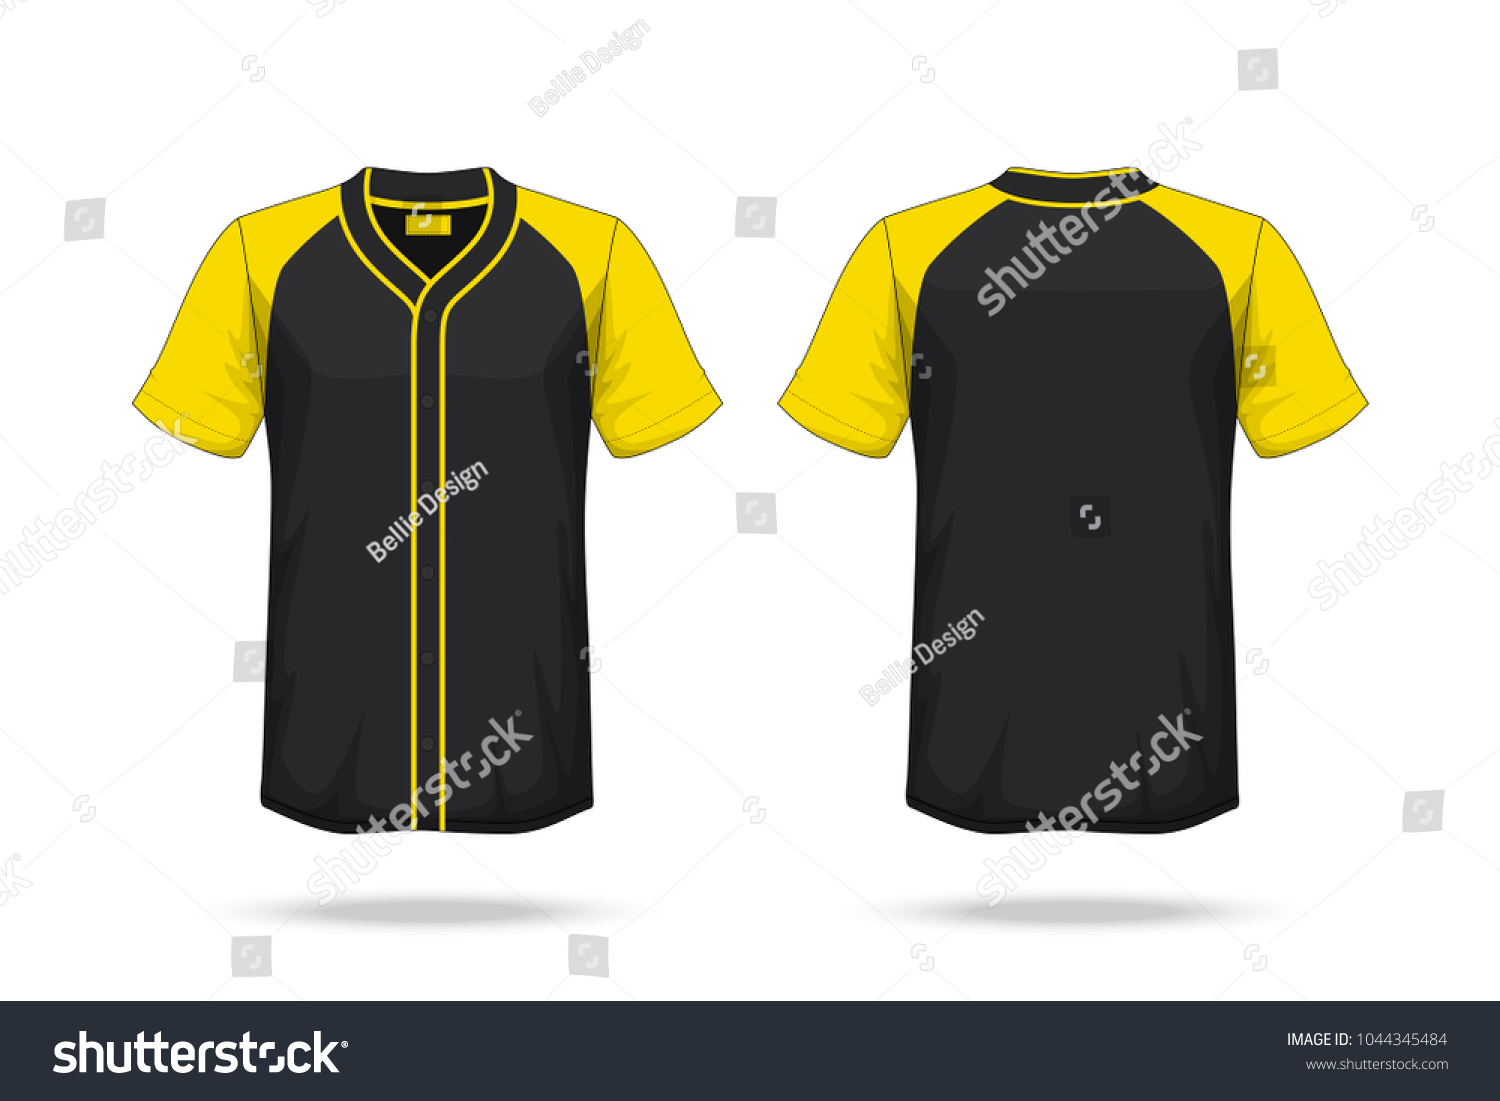 black and yellow baseball tee